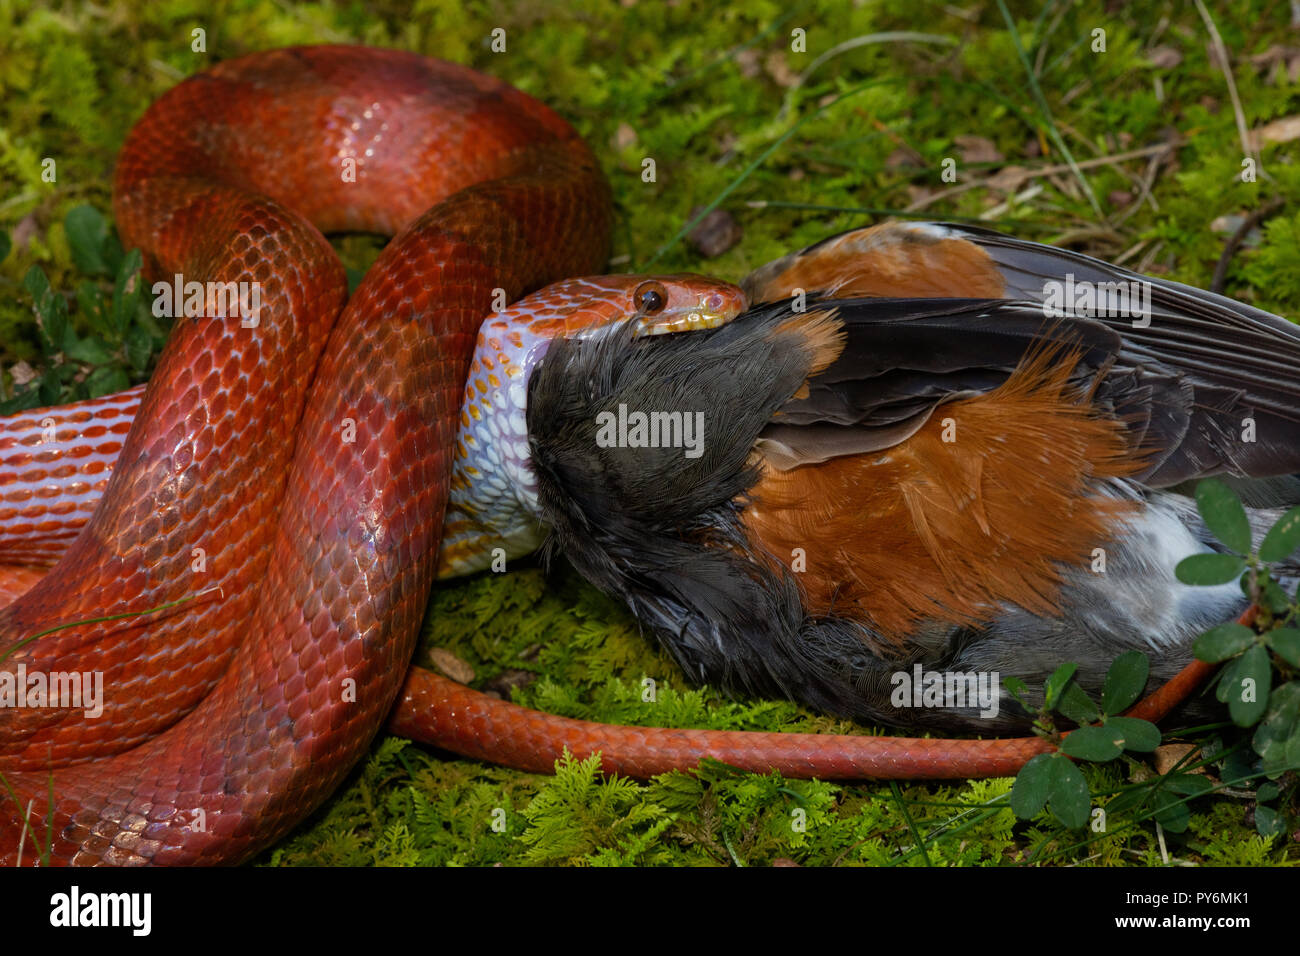 Maíz Pantherophis guttatus, la serpiente, intentando comer American Robin, Robin cautivos de serpiente hallada muerta y ofrecido a Snake, Maryland Foto de stock